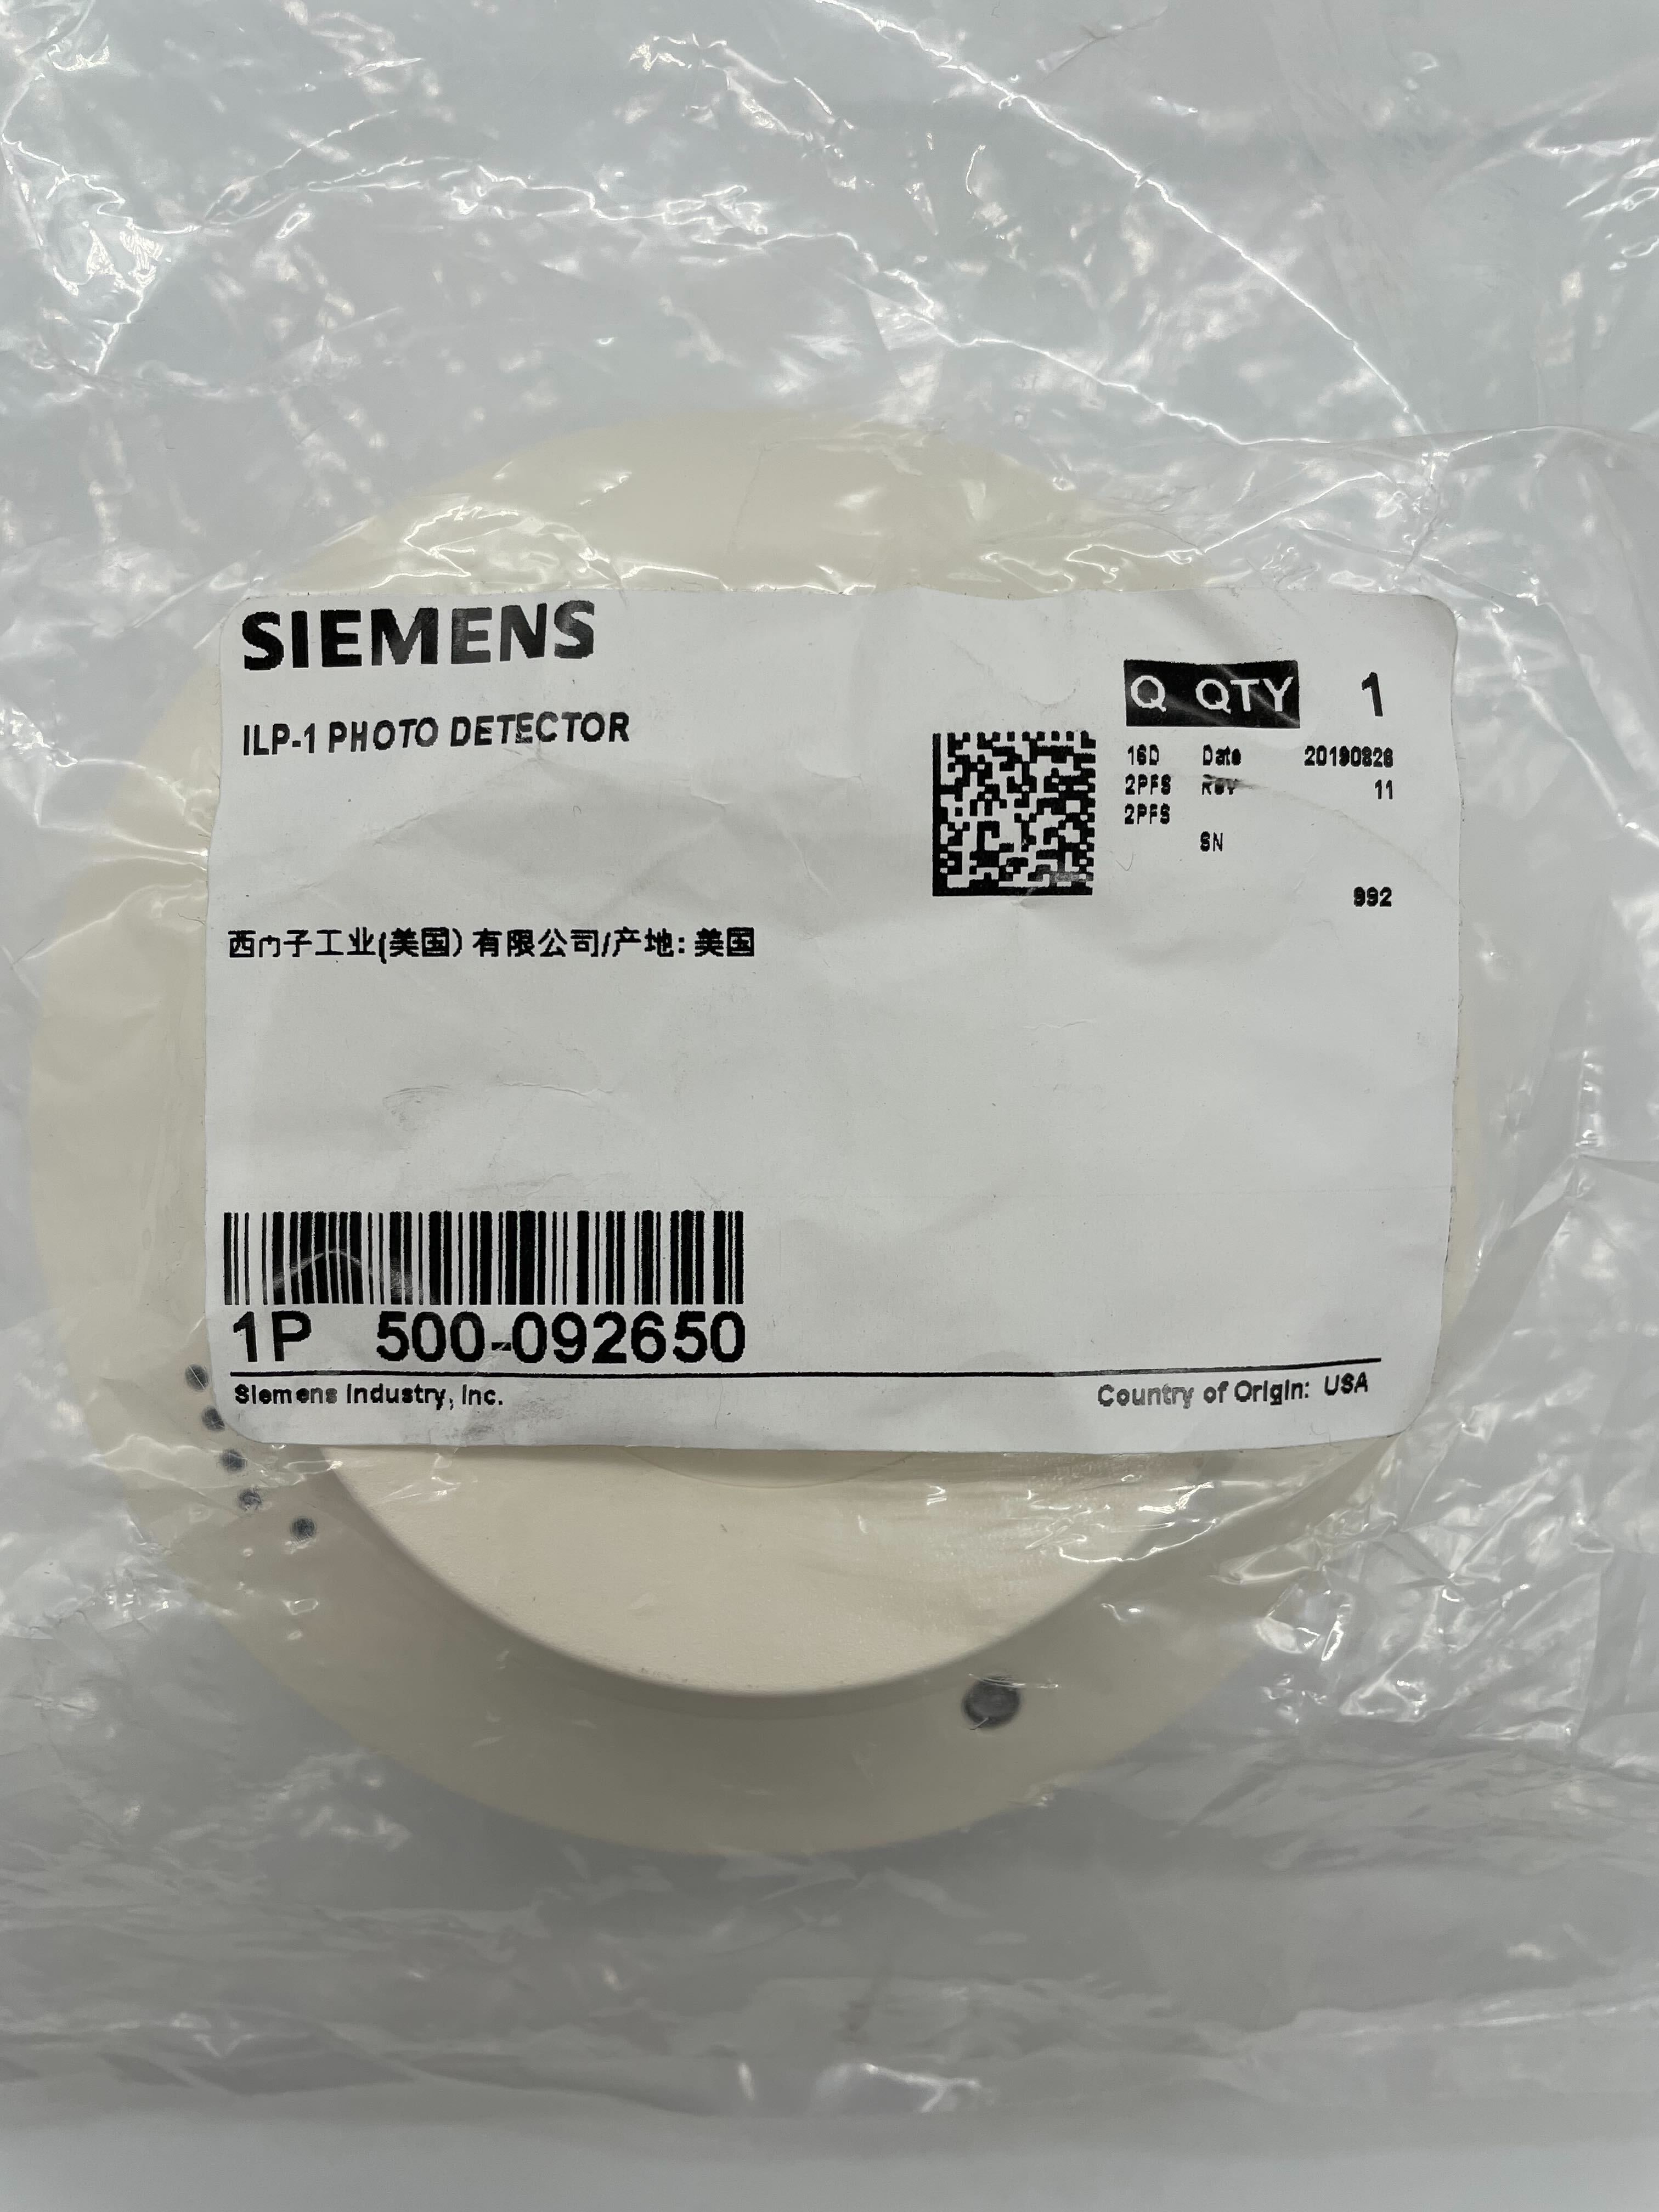 Siemens ILP-1